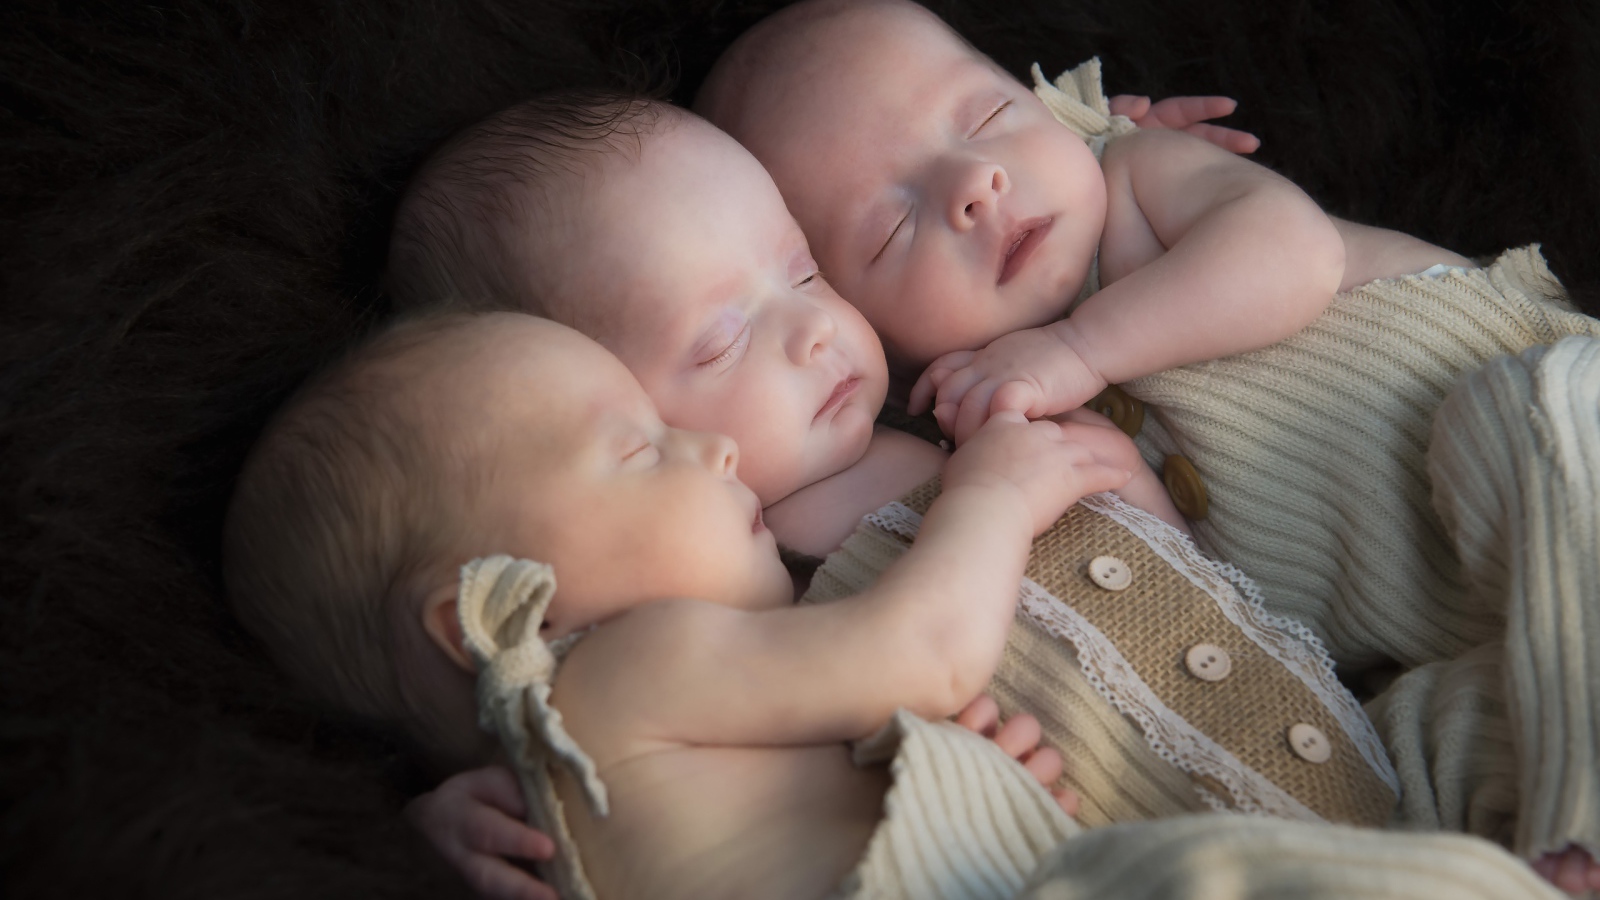 Три маленьких грудных ребенка спят обнявшись 